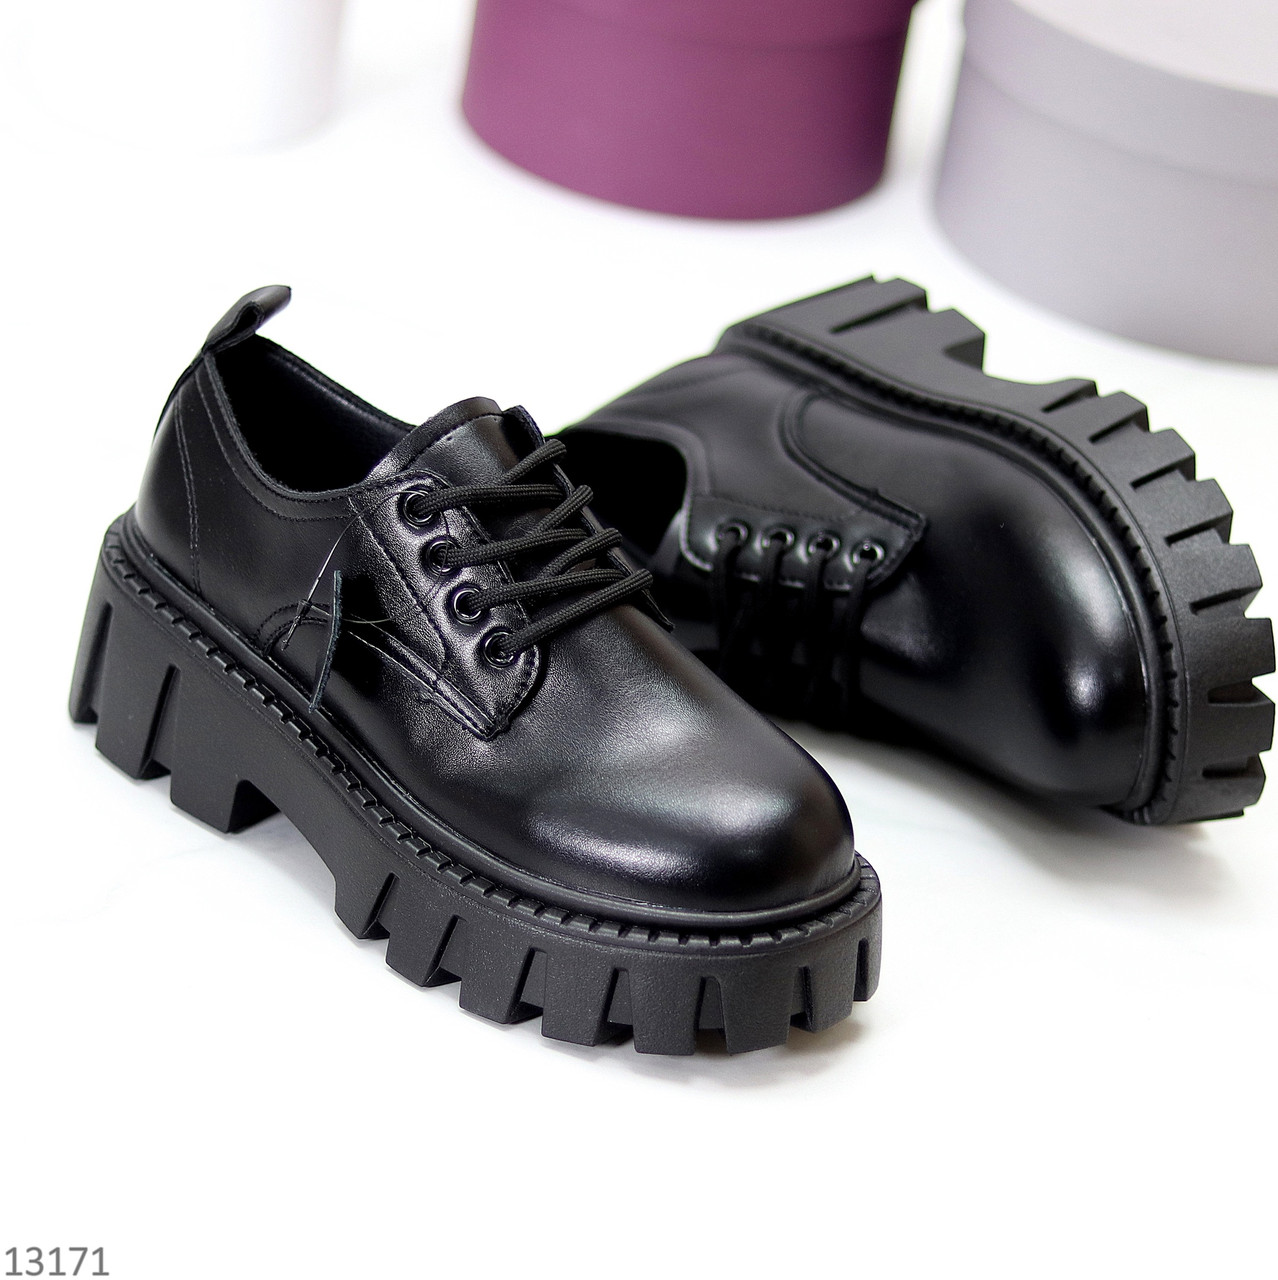 Трендовые черные кожаные женские туфли гриндерсы натуральная кожа на массивной подошве 40-25см (обувь женская)